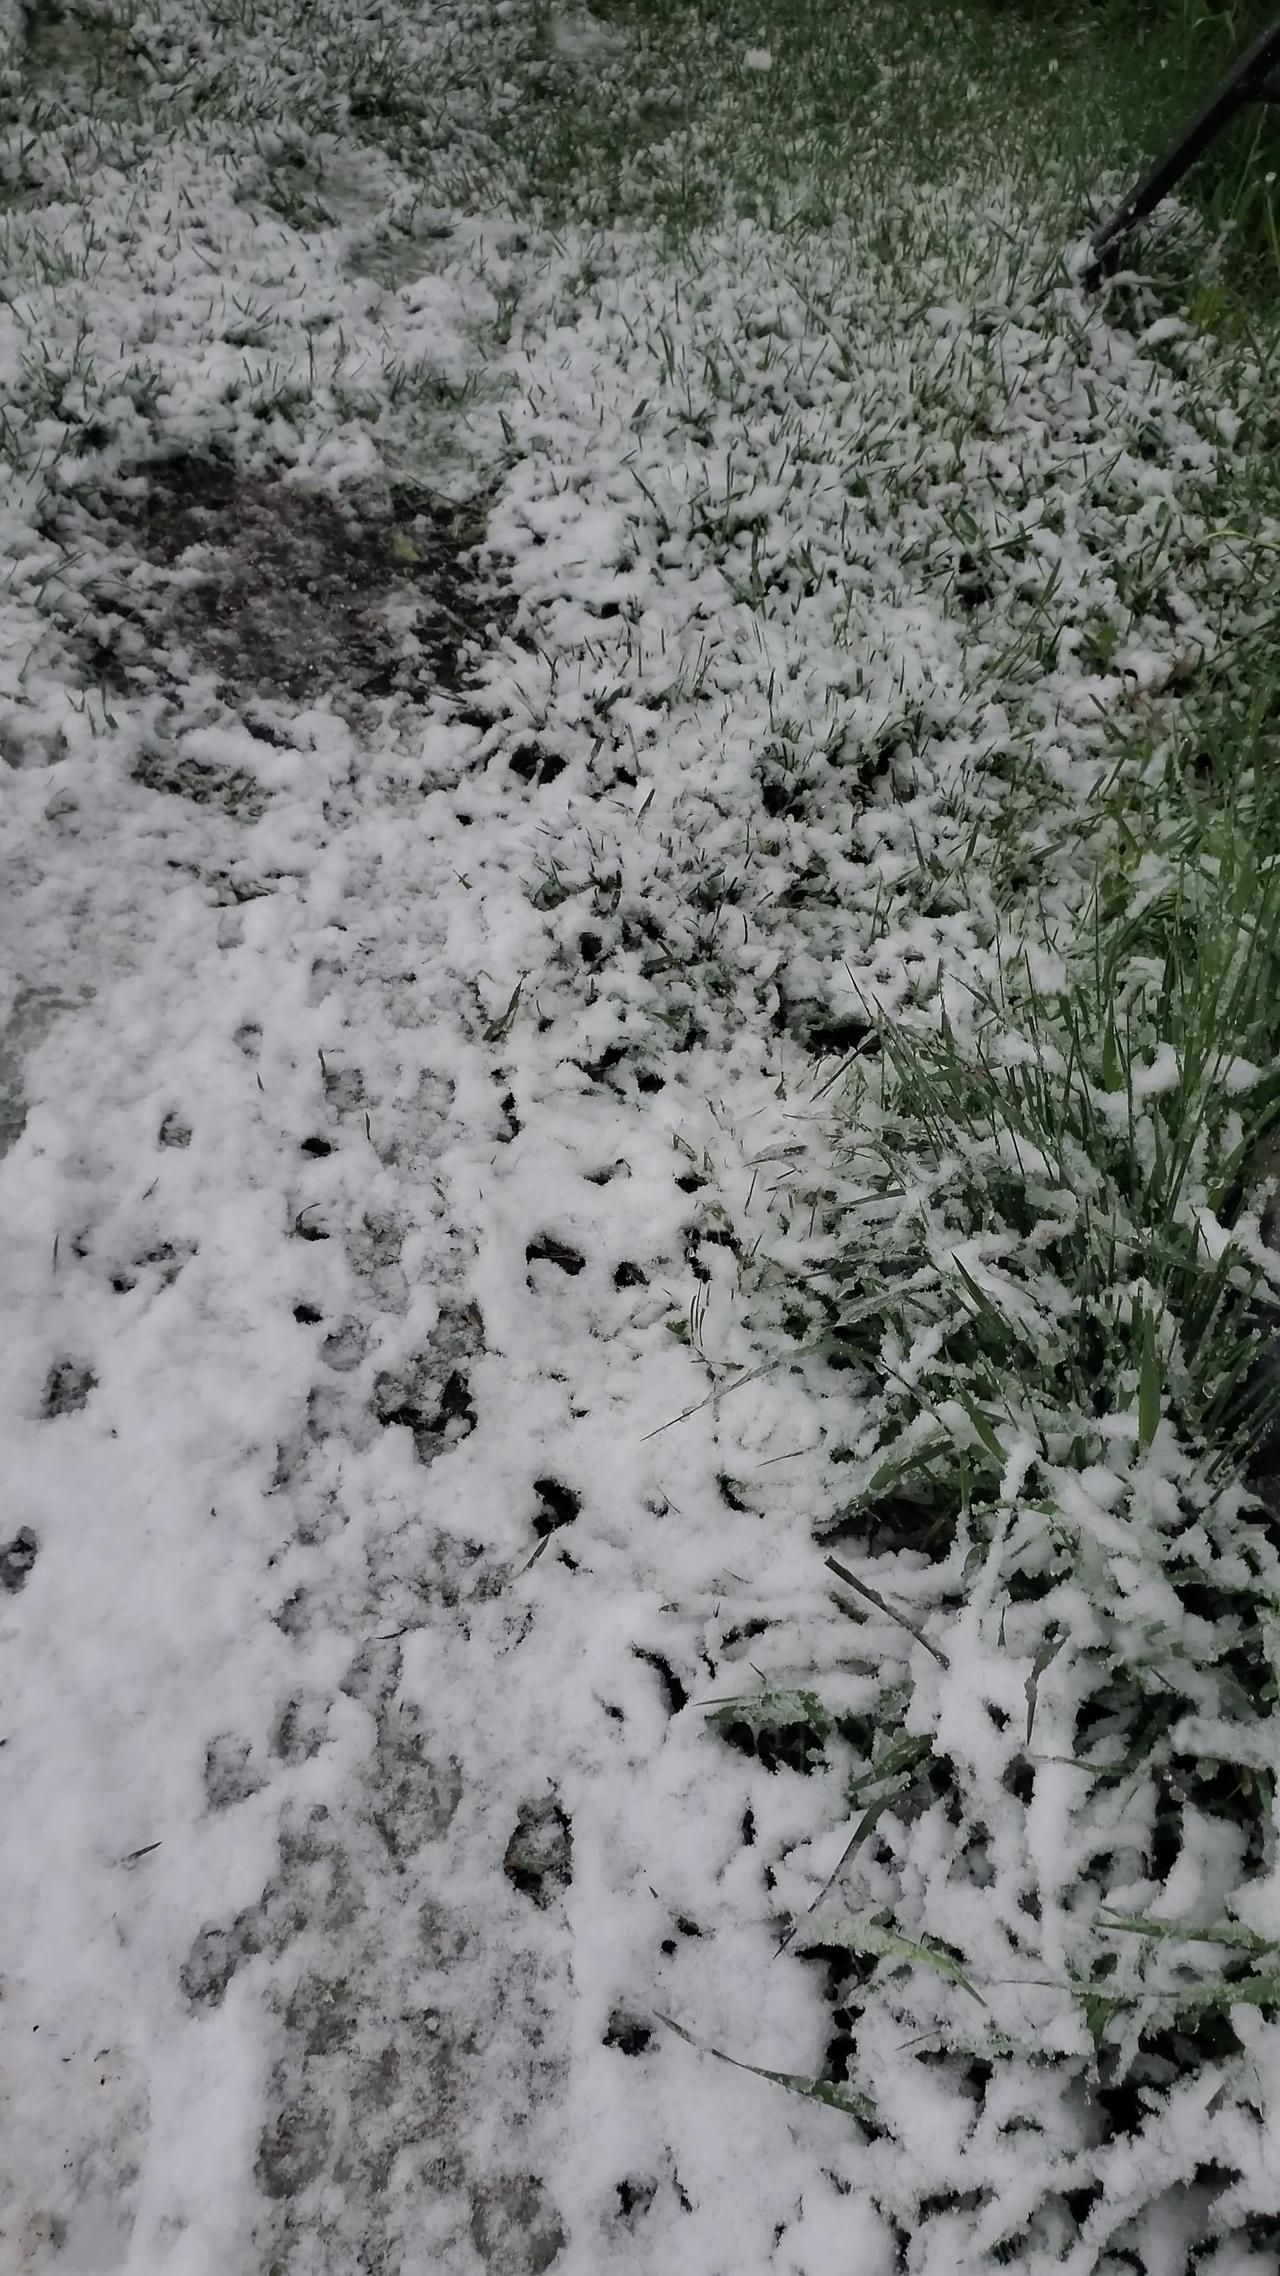 Strange Tracks in the Snow, Let's Follow Them!